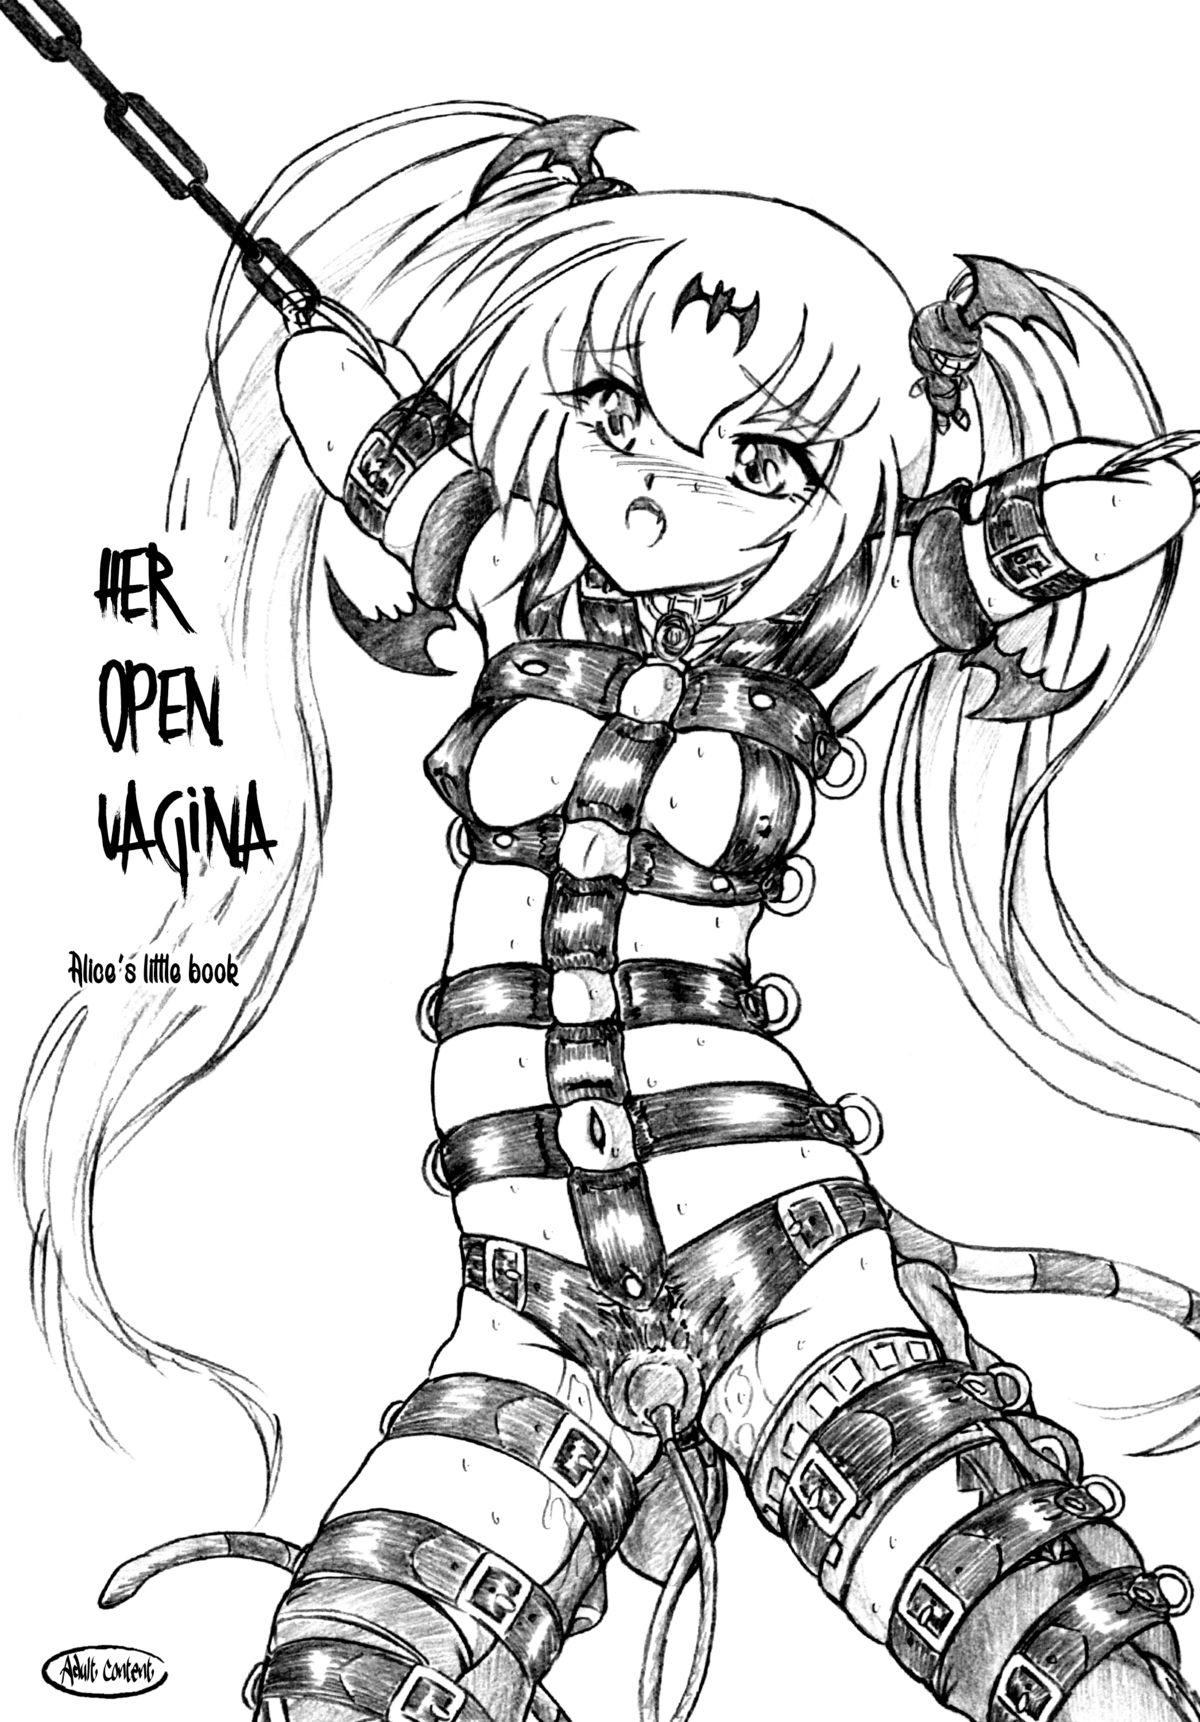 Chitsu o Hiraku Mono | Her Open Vagina 0